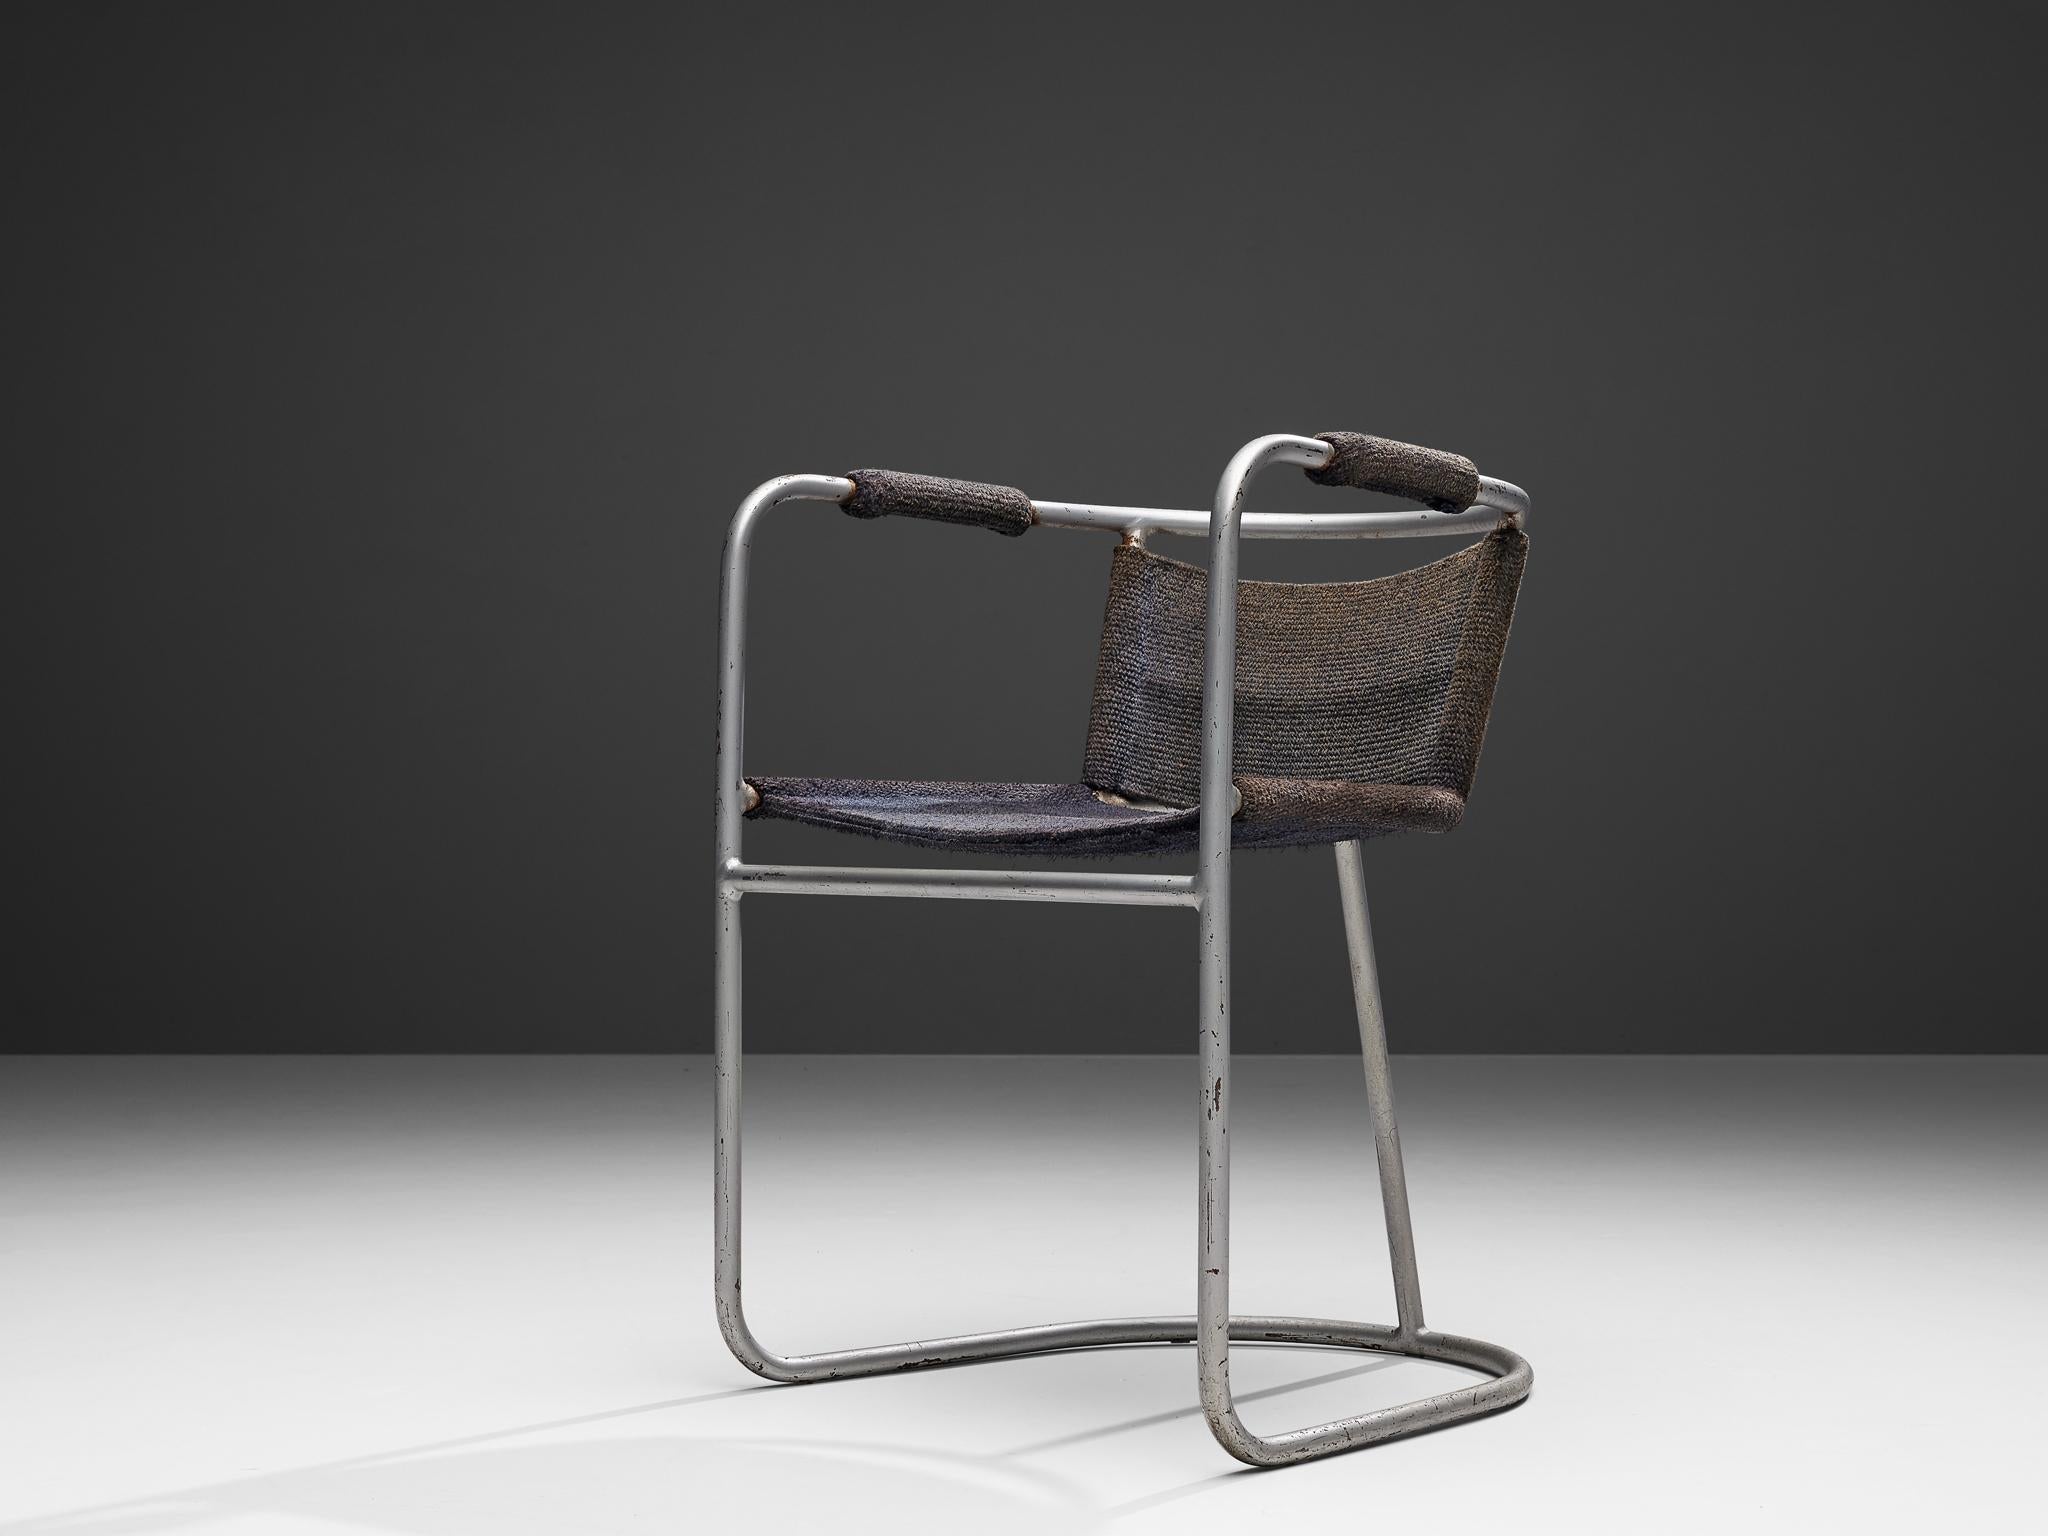 Bas Van Pelt, fauteuil, acier chromé, sisal, Pays-Bas, années 1930

Ce fauteuil, conçu par Bas Van Pelt, présente une structure en métal tubulaire courbé. Cette première version montre que le développement de la chaise cantilever n'en était qu'à ses